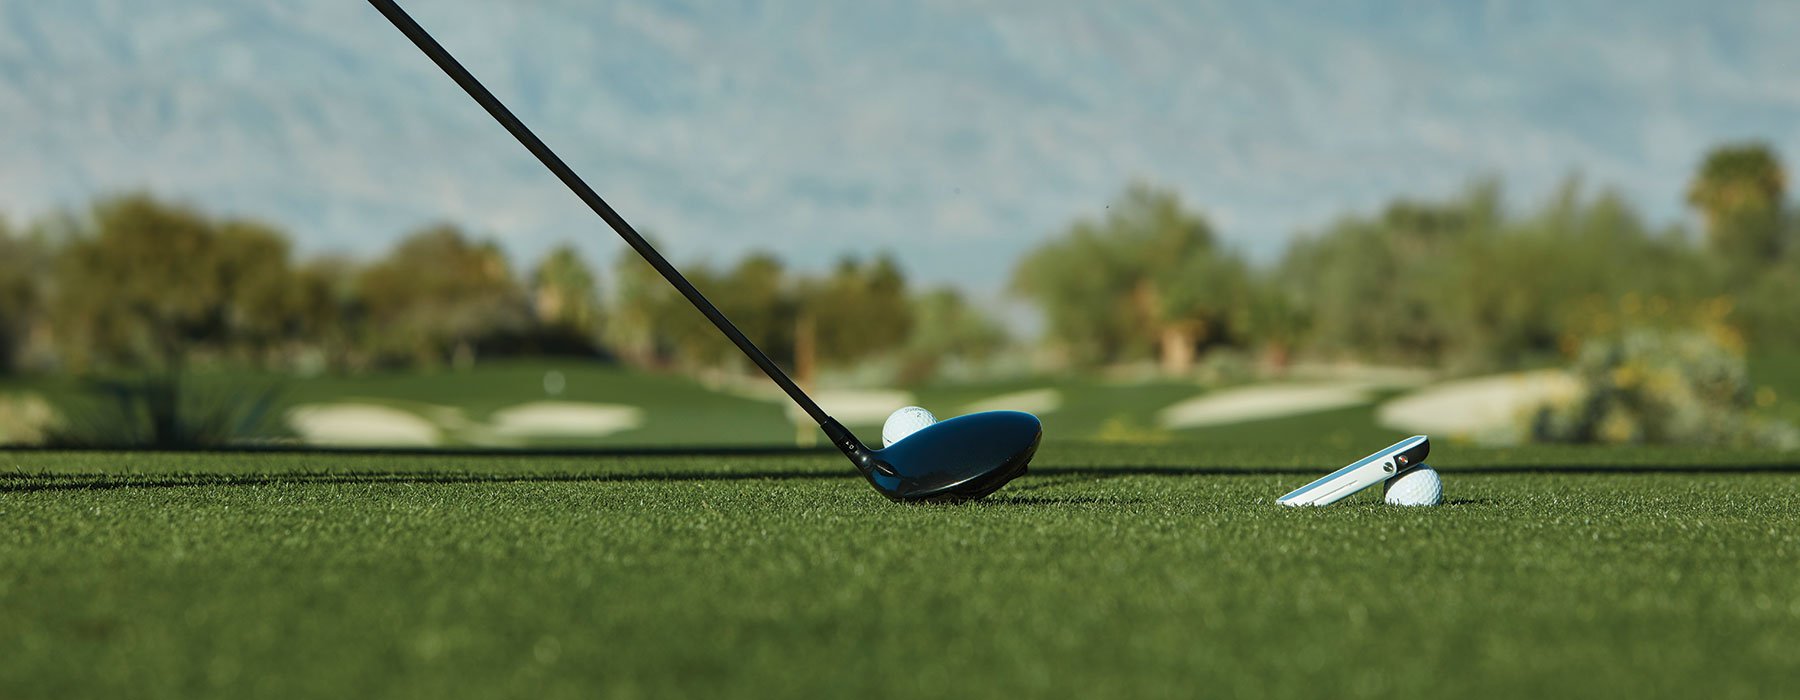 Immagine di un ferro da golf.